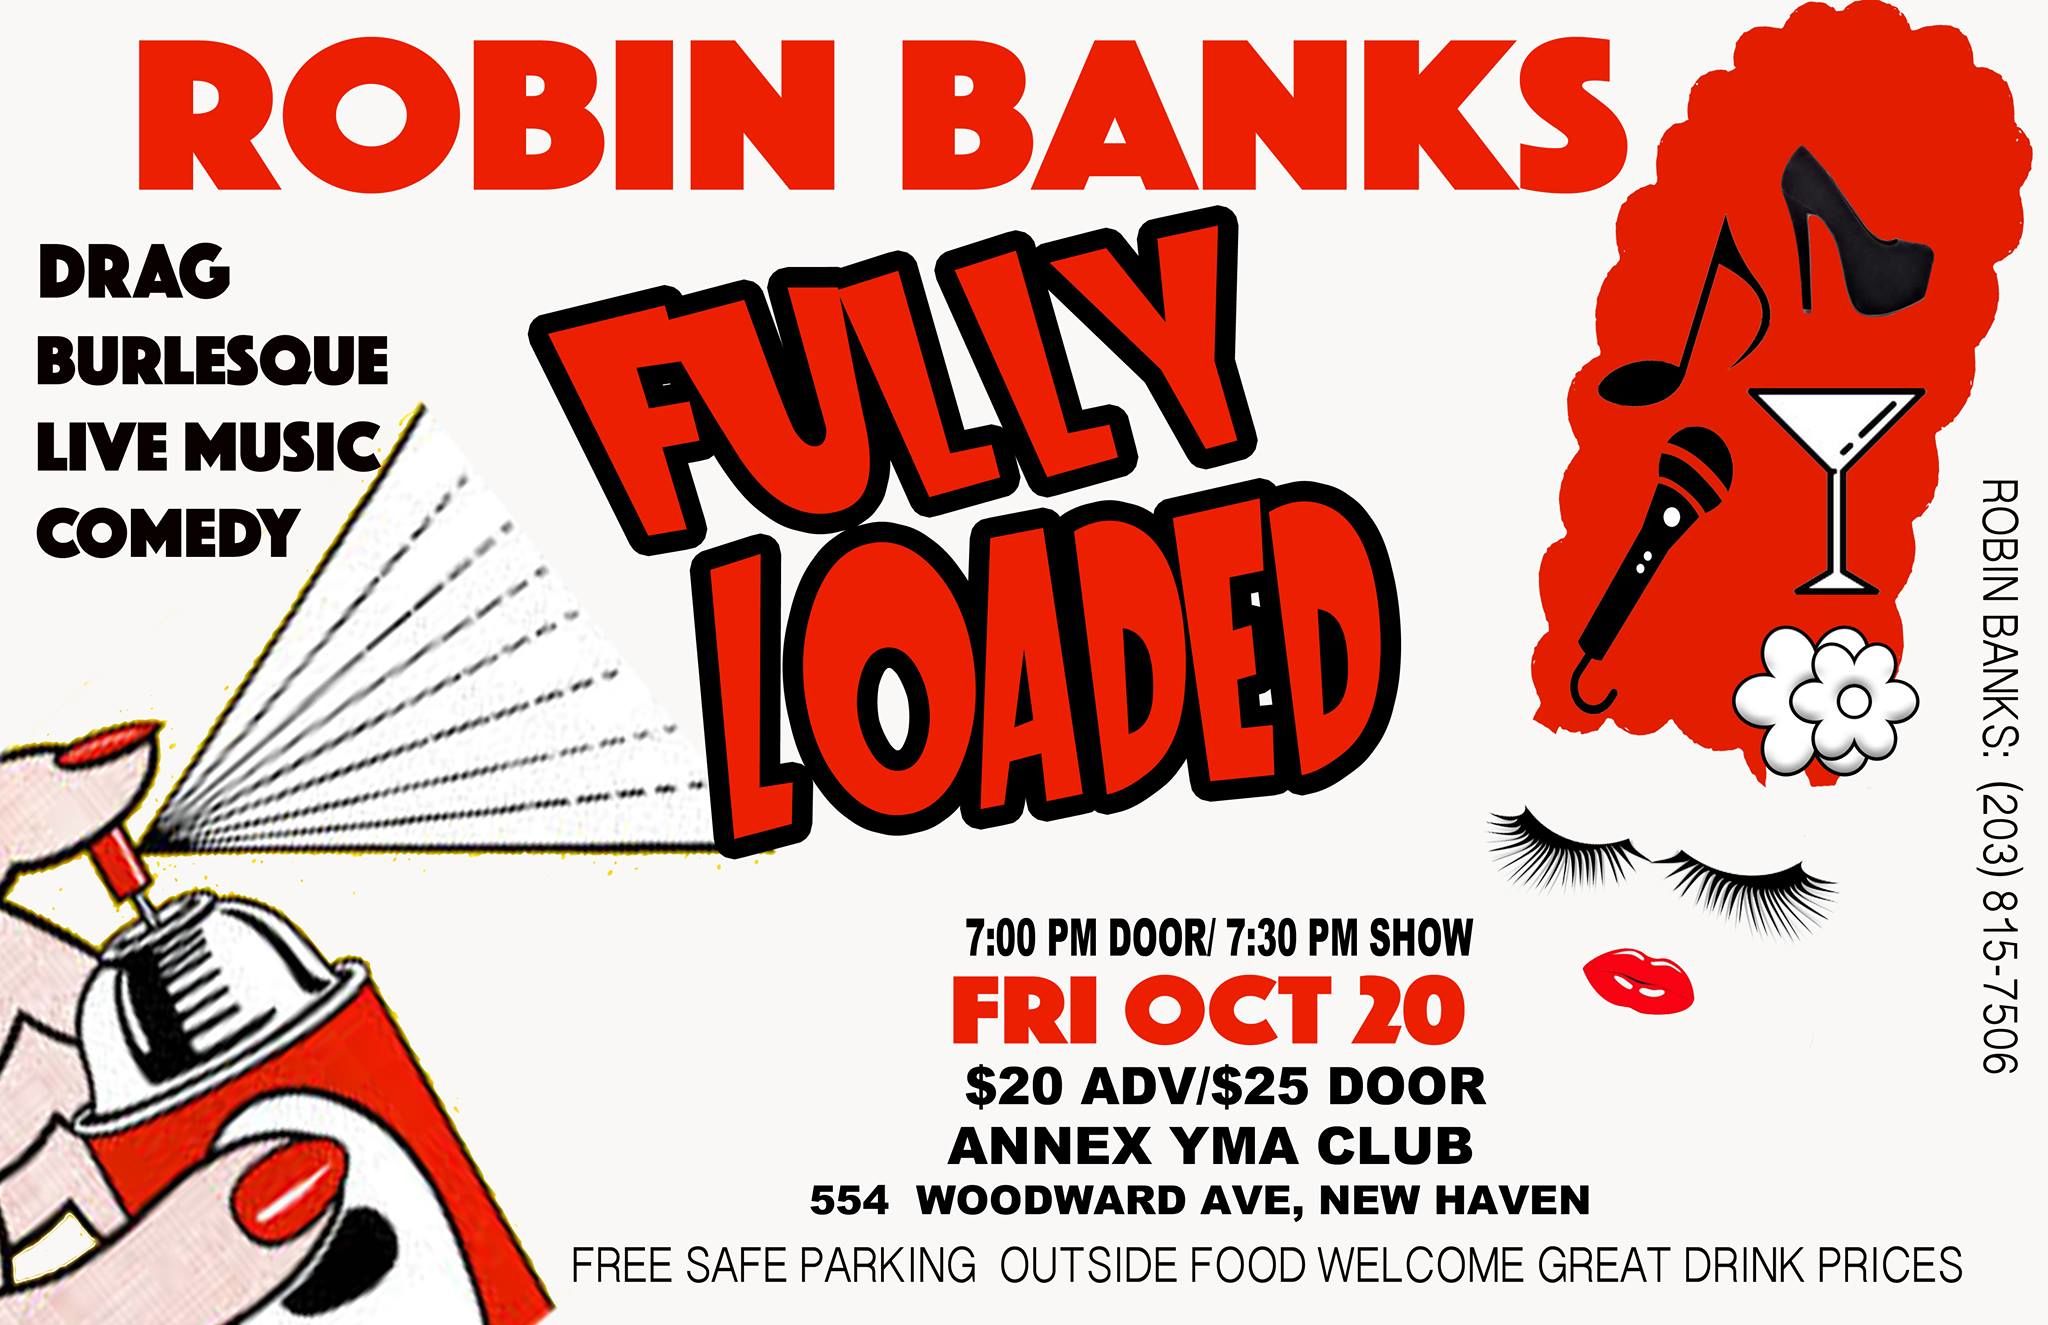 Robin Banks fully loaded flyer.jpg